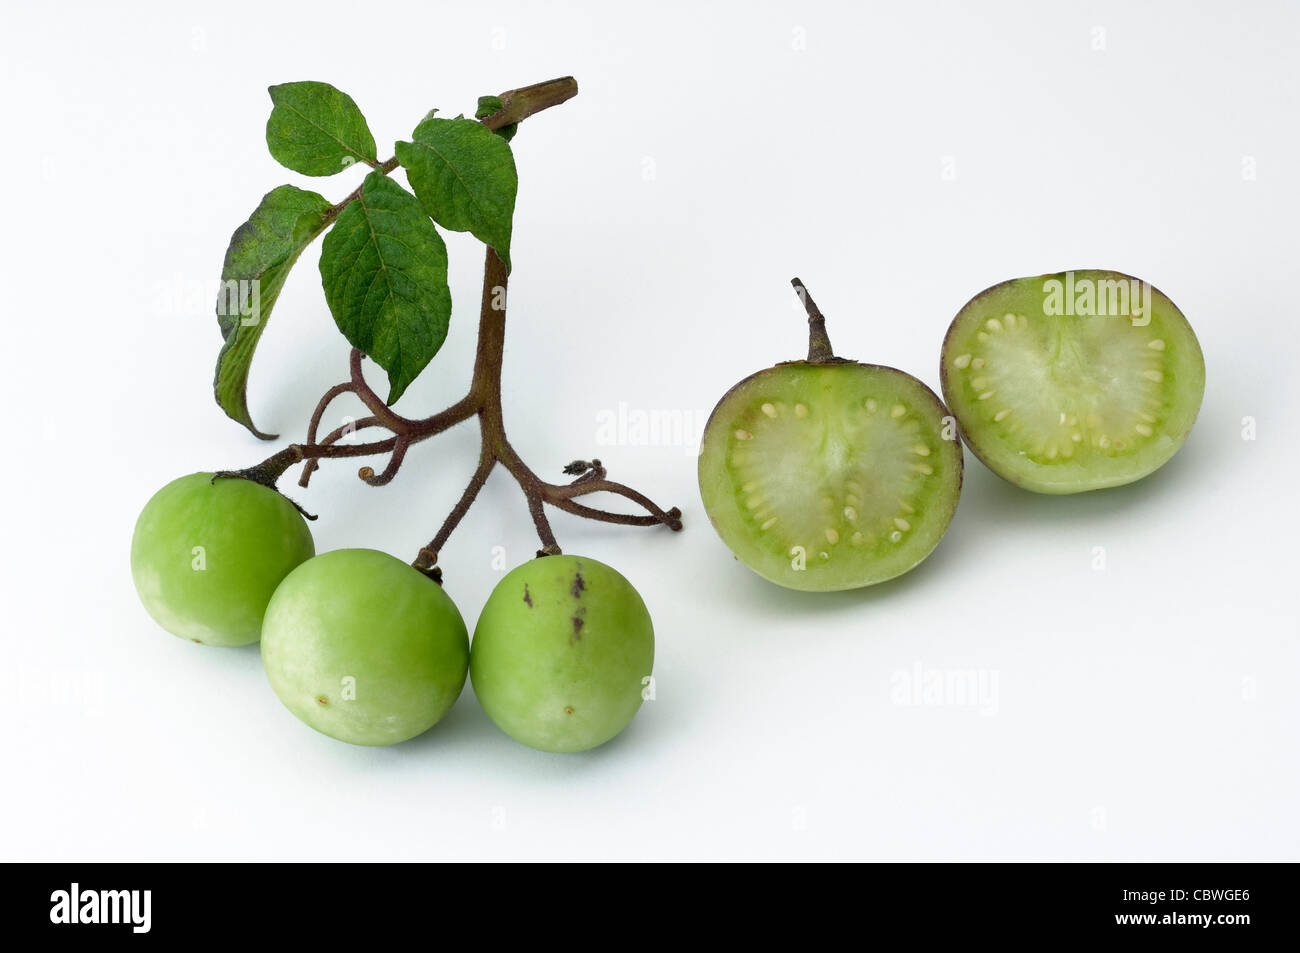 La pomme de terre (Solanum tuberosum). Avec la manette et petits fruits verts fruits laved, studio photo sur un fond blanc. Banque D'Images